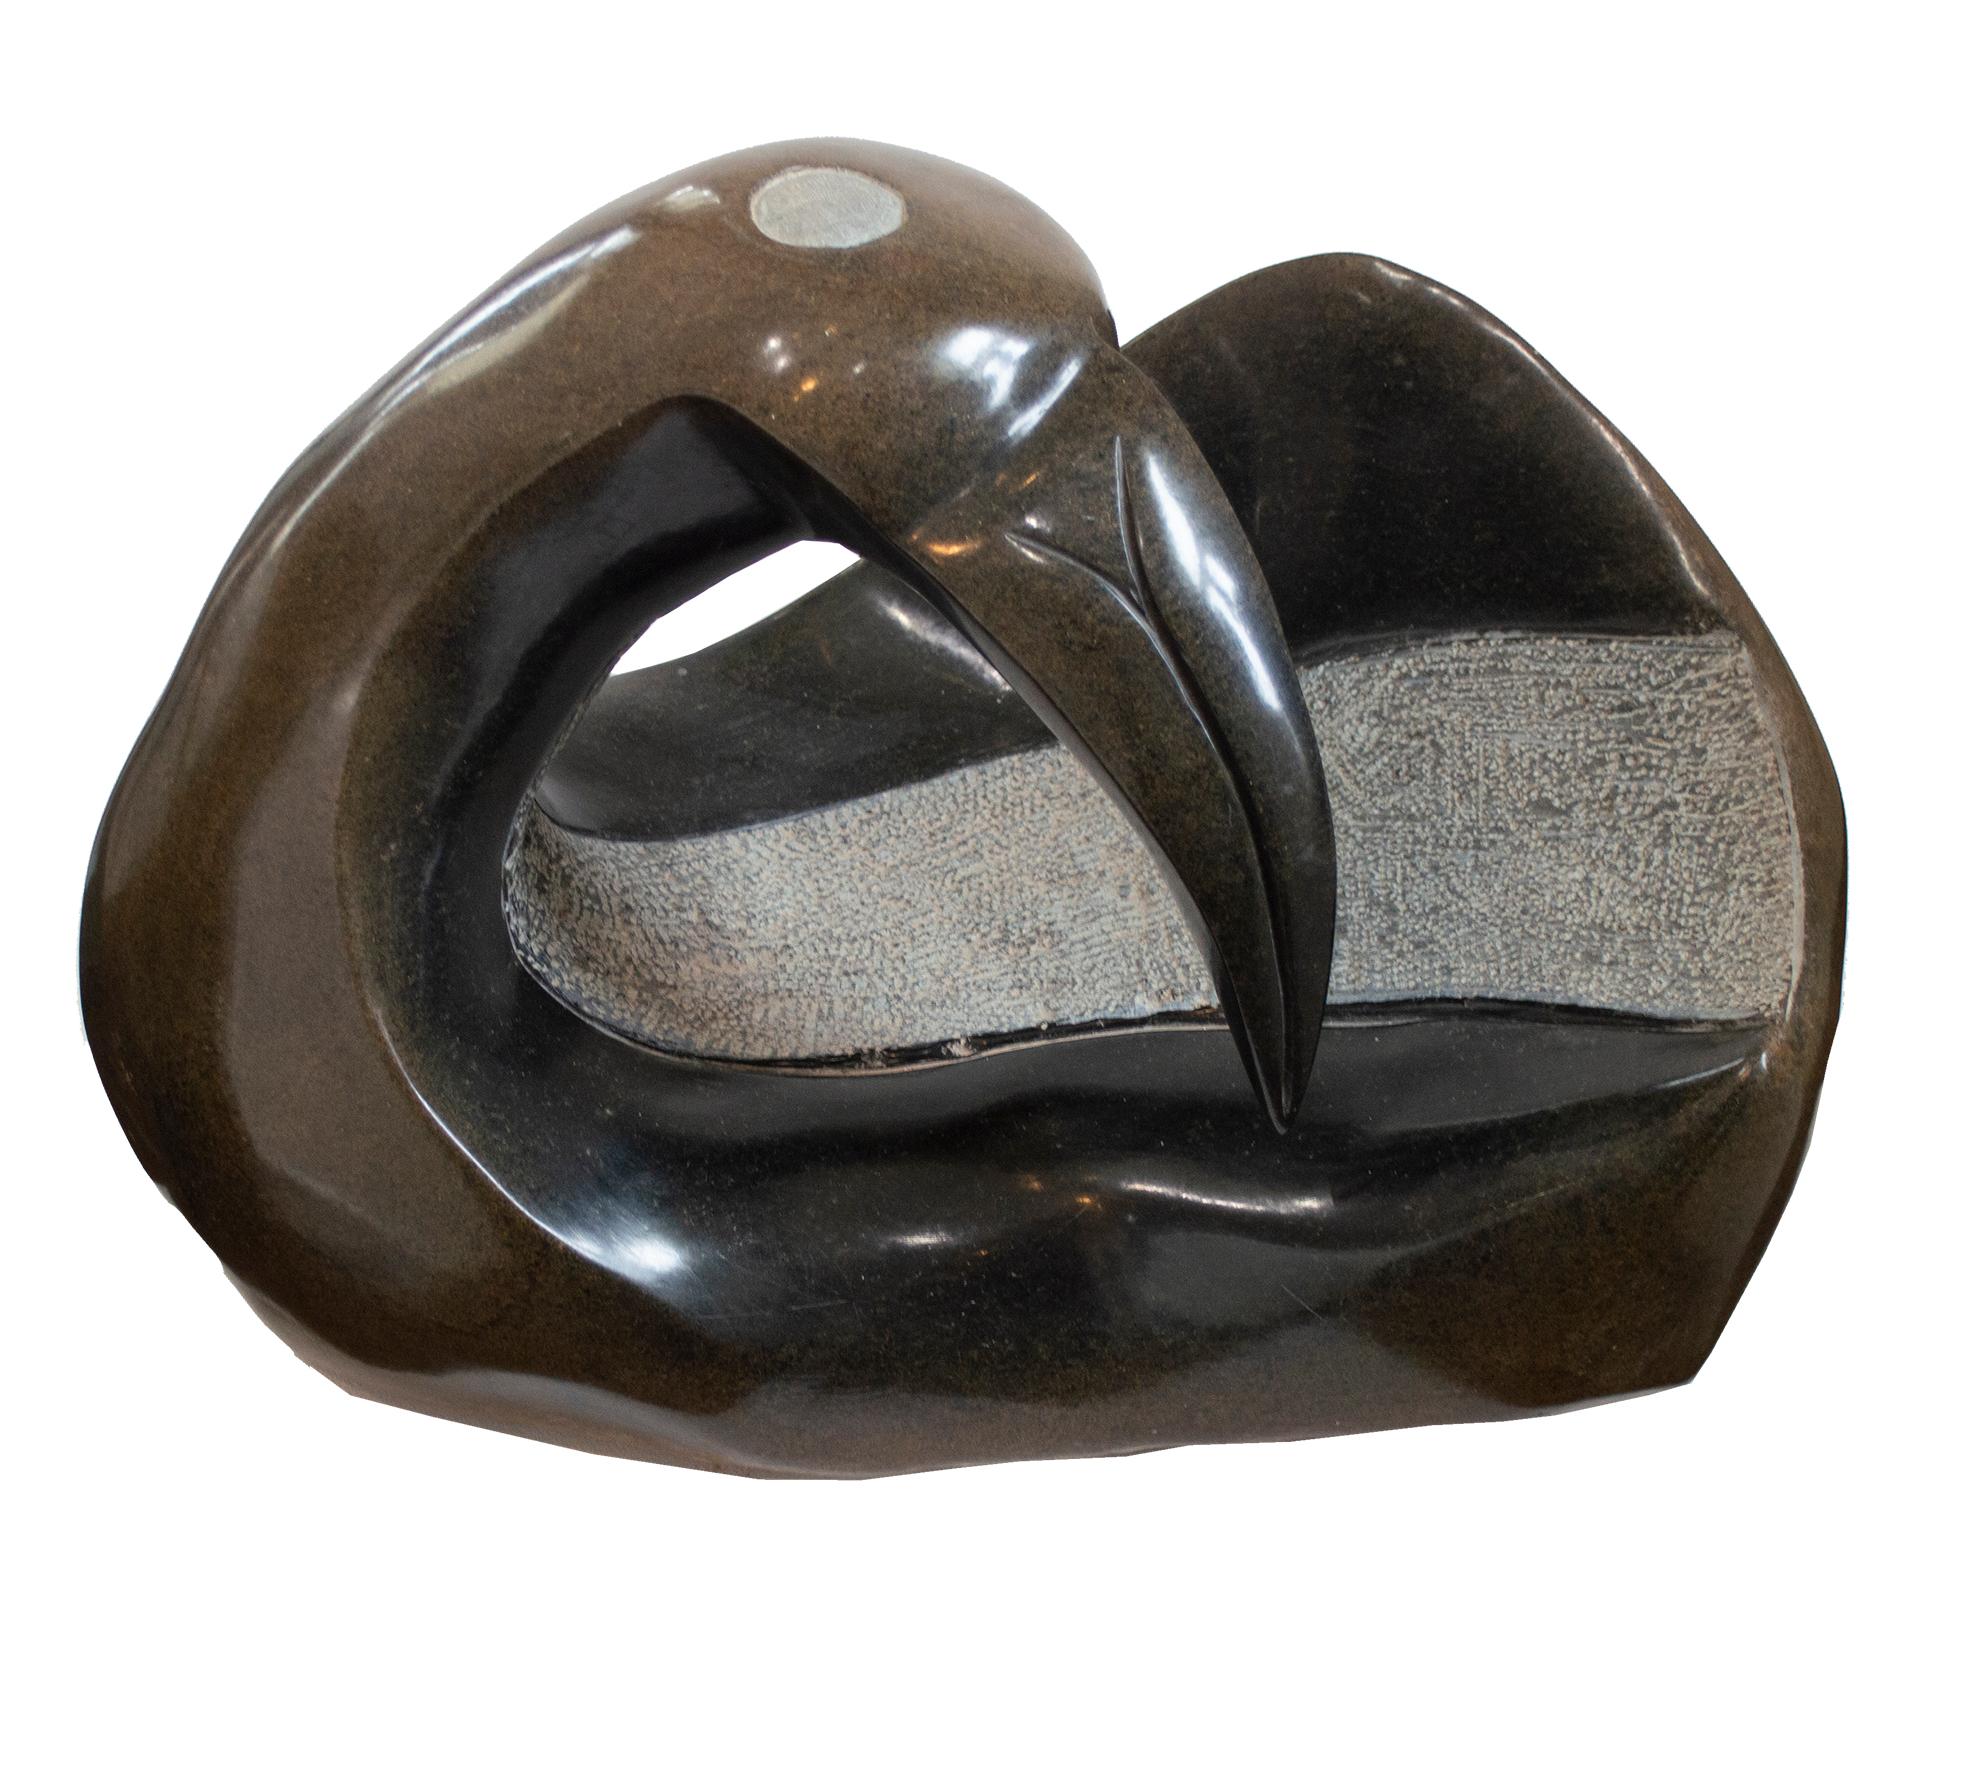 landing Dove" est une sculpture originale en pierre opale serpentine signée par l'artiste contemporain zimbabwéen Joel Nhete. L'artiste présente dans cette sculpture la figure très abstraite d'un oiseau, qui penche la tête en arrière, les ailes